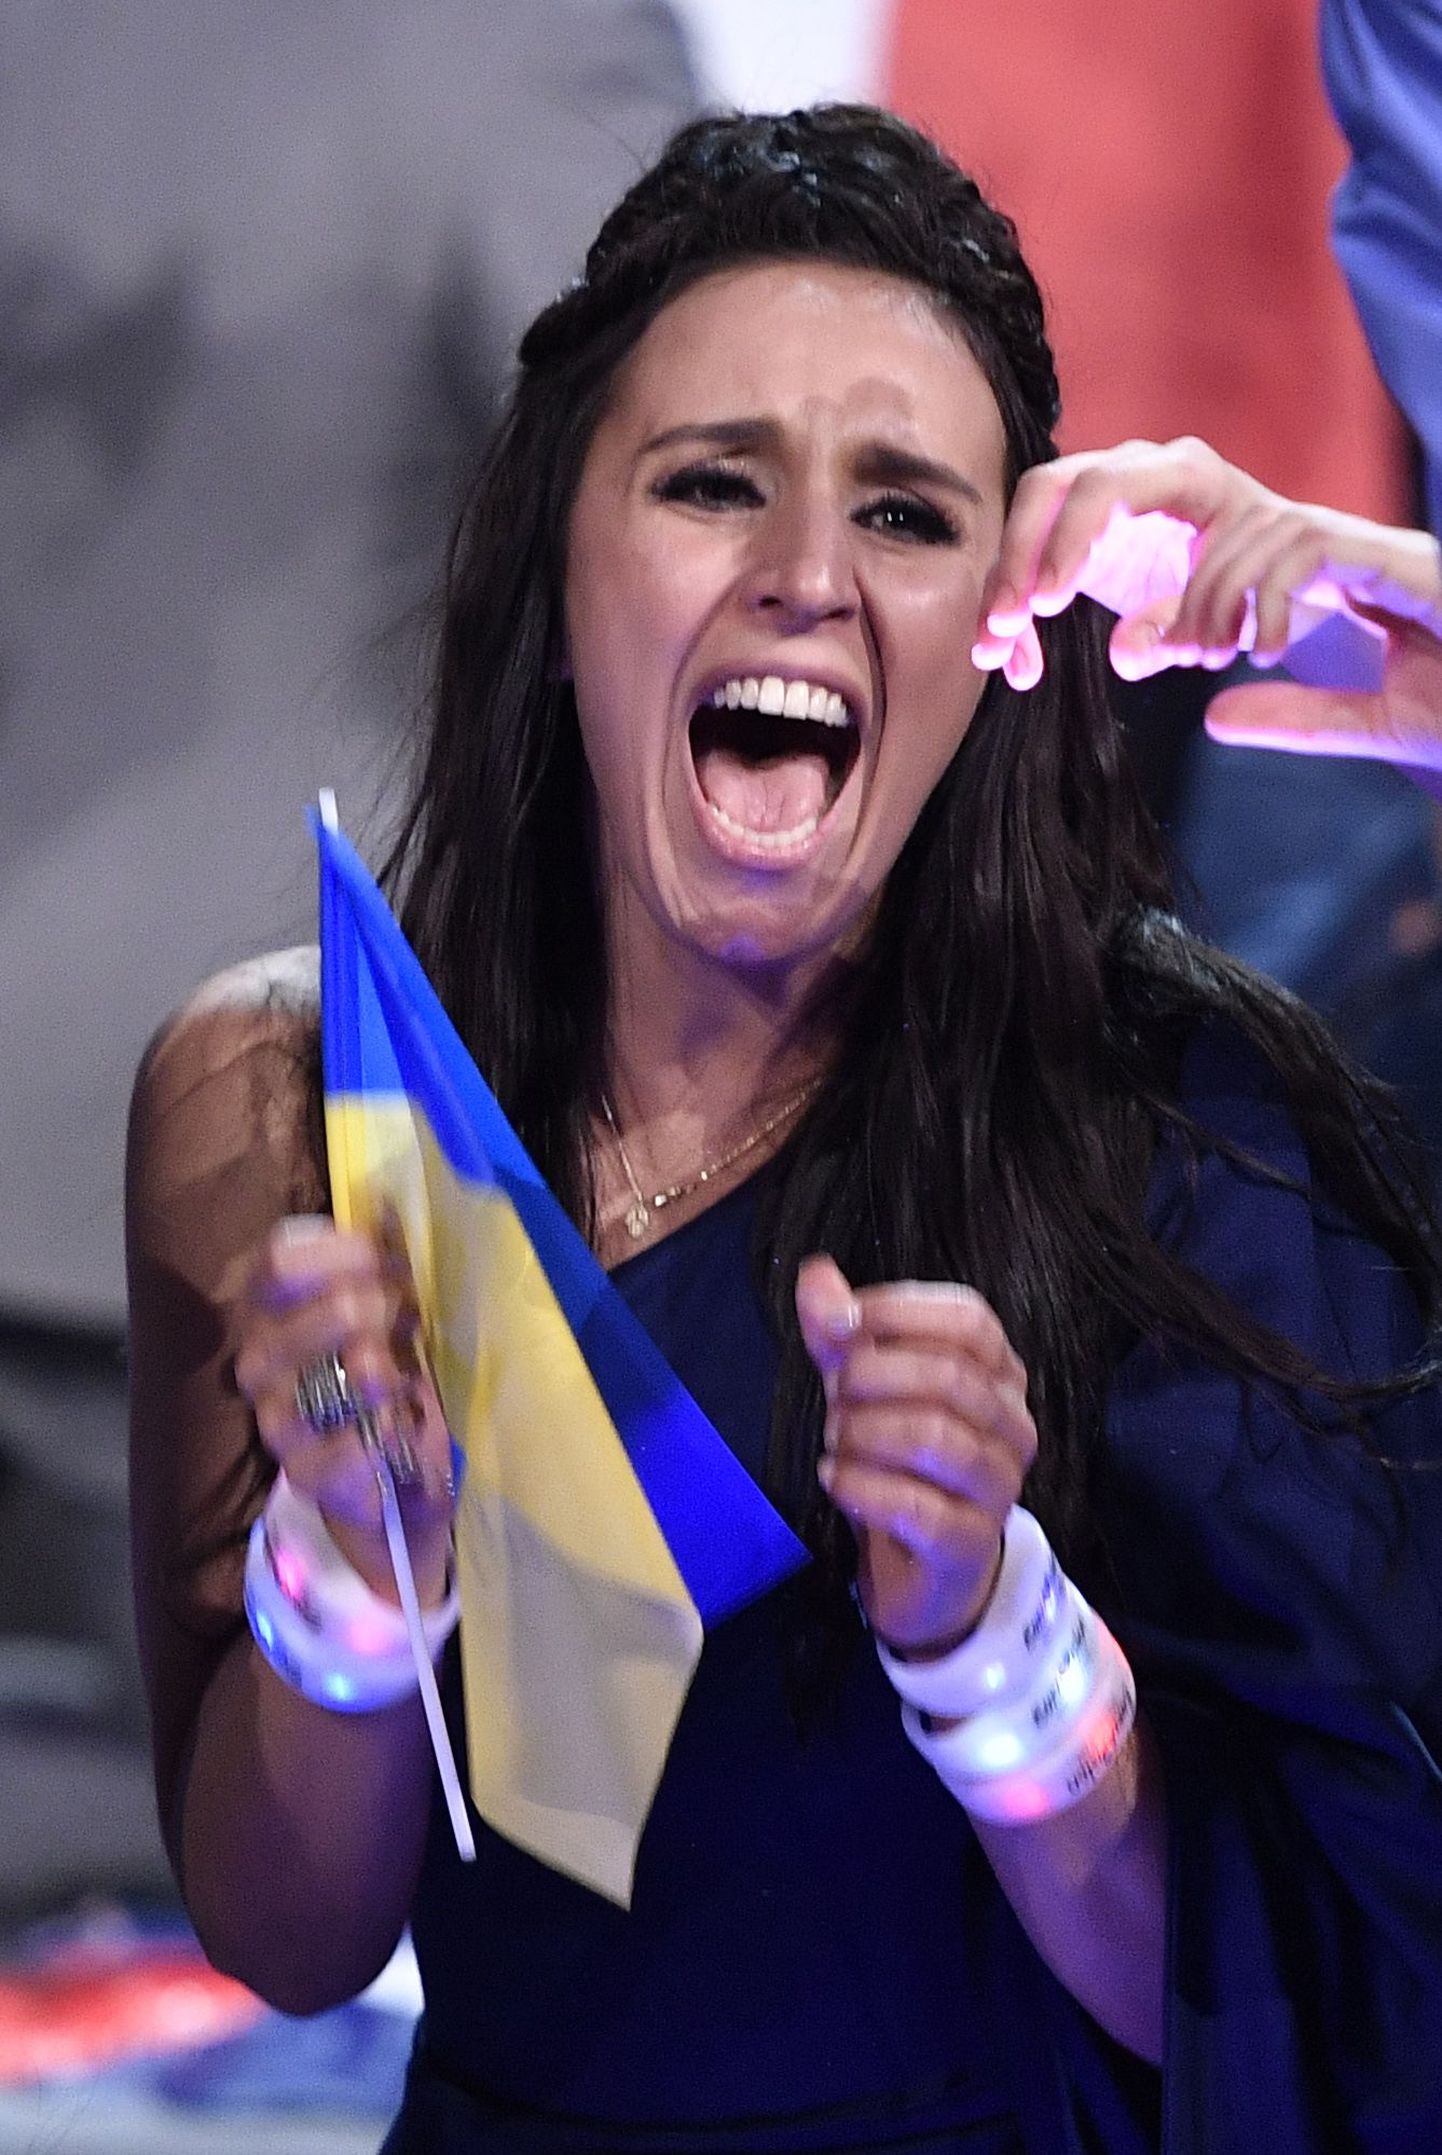 Stockholmis toimunud 61. Eurovisiooni lauluvõistluse võitis Ukraina esindaja Jamala